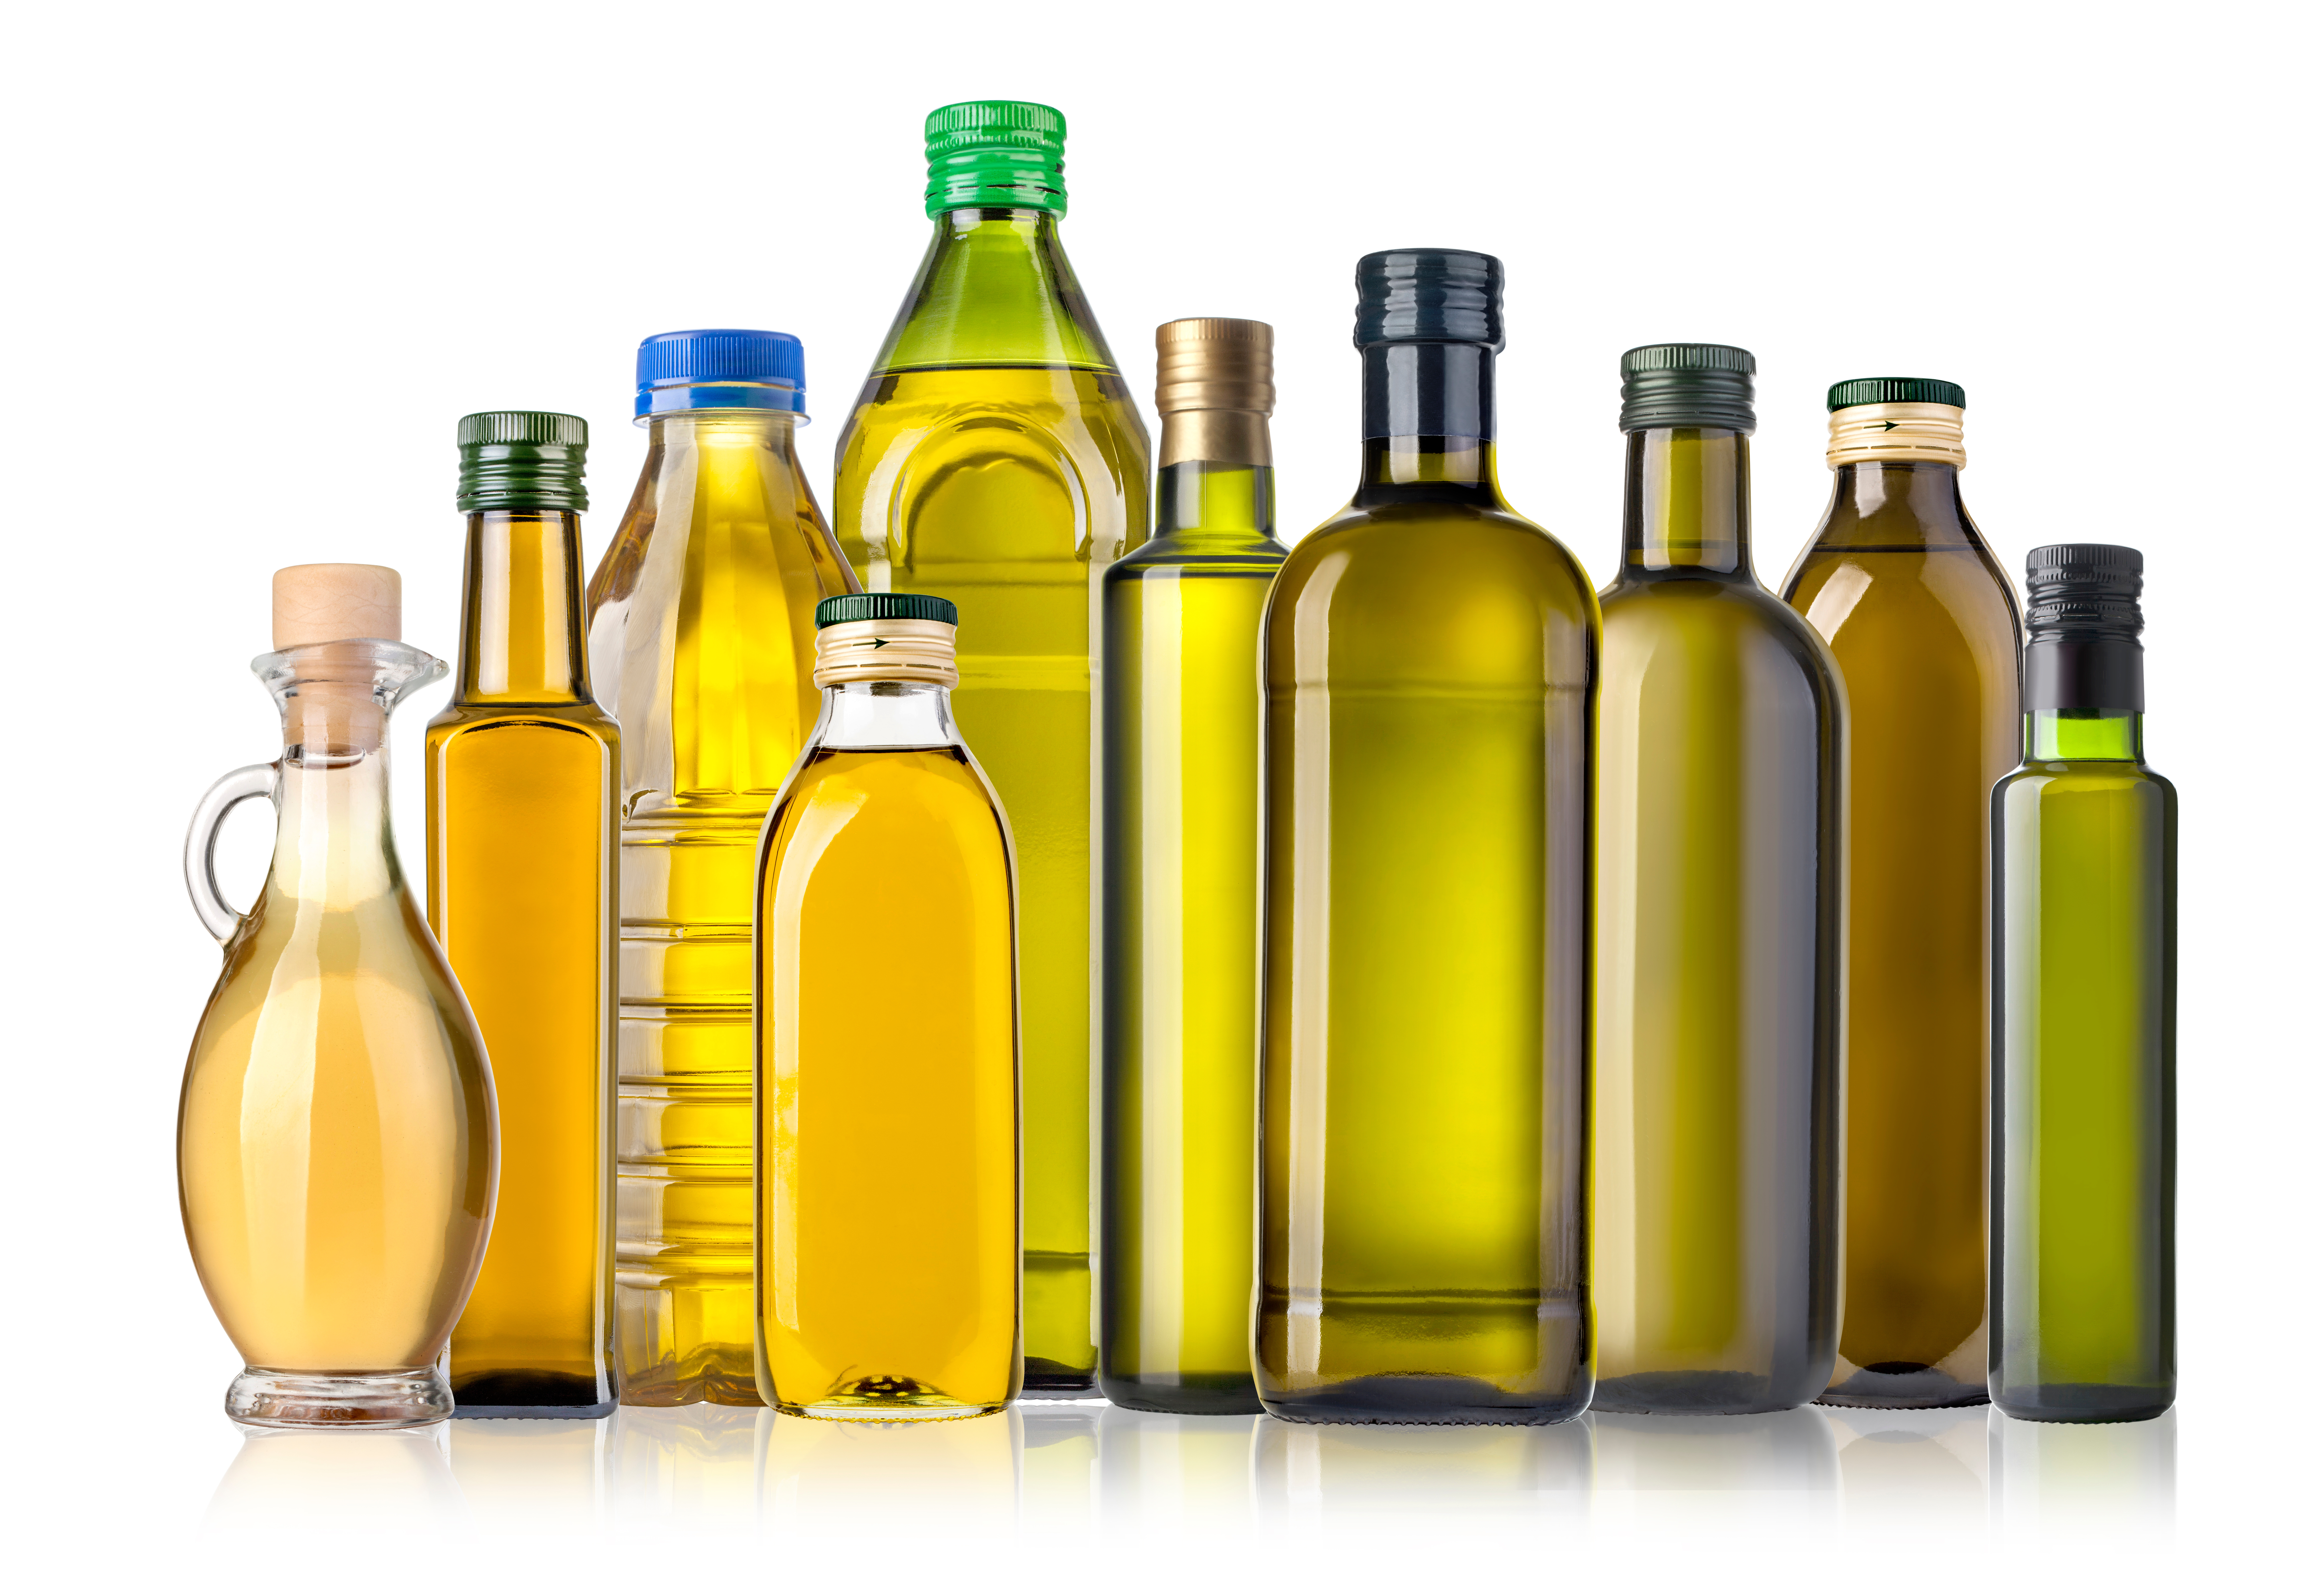 Olive oil bottles on white background